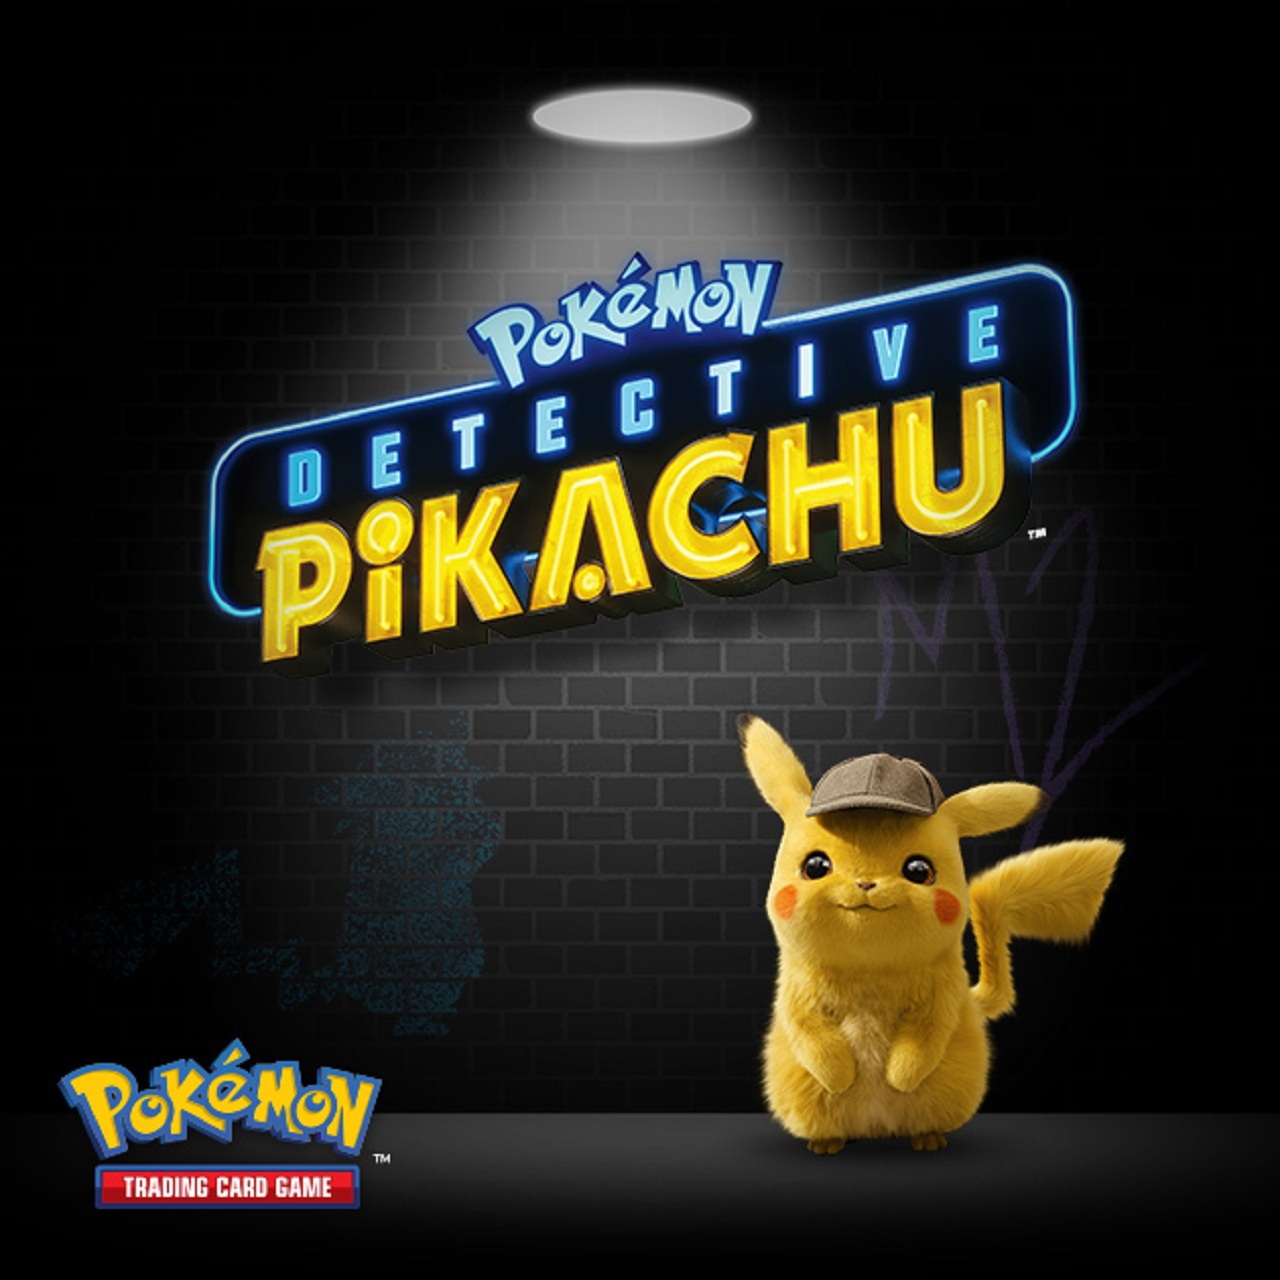 Pokémon Detective Pikachu 2019 Cb01 Film Streaming